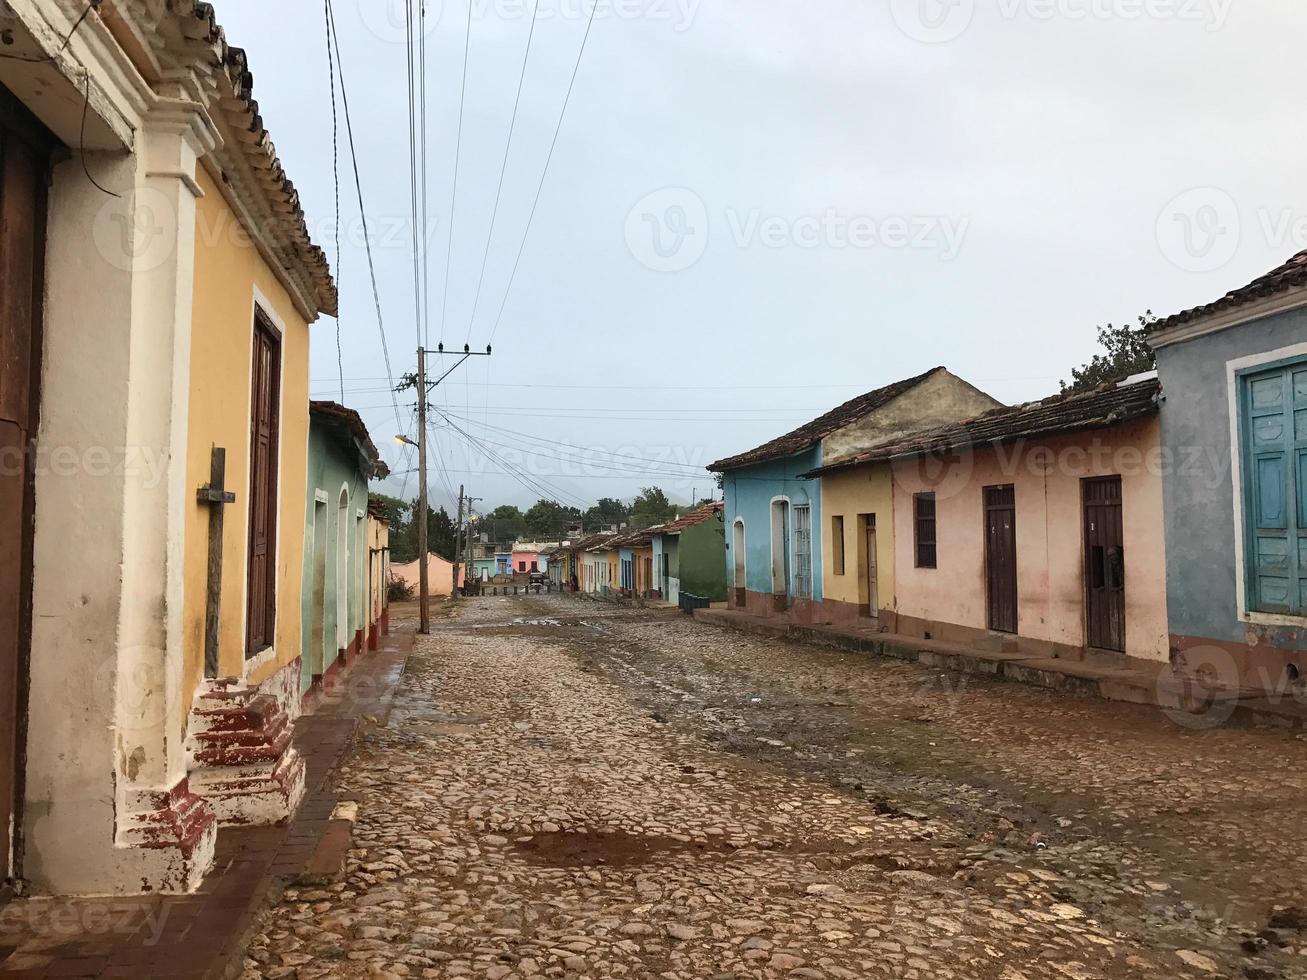 calles de la vieja trinidad, cuba, un sitio del patrimonio mundial de la unesco. foto